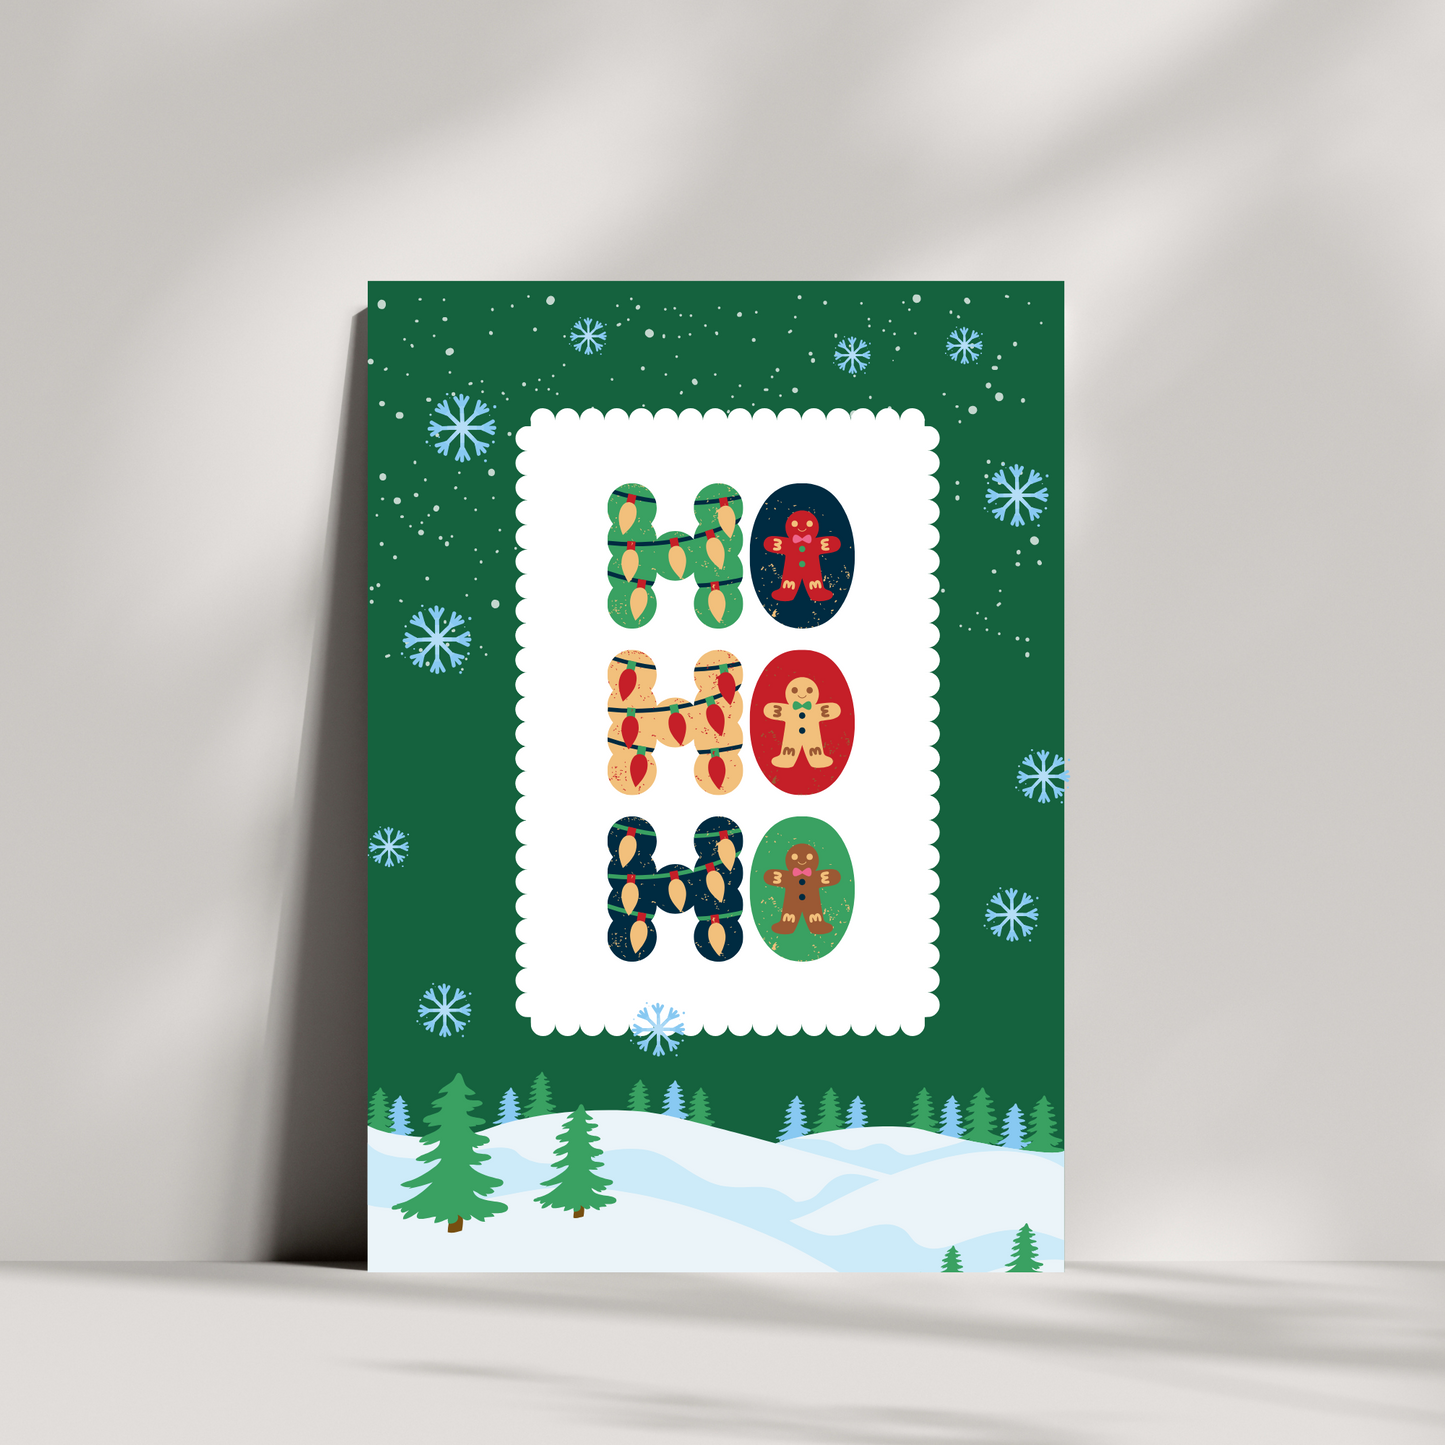 HO HO HO Christmas card